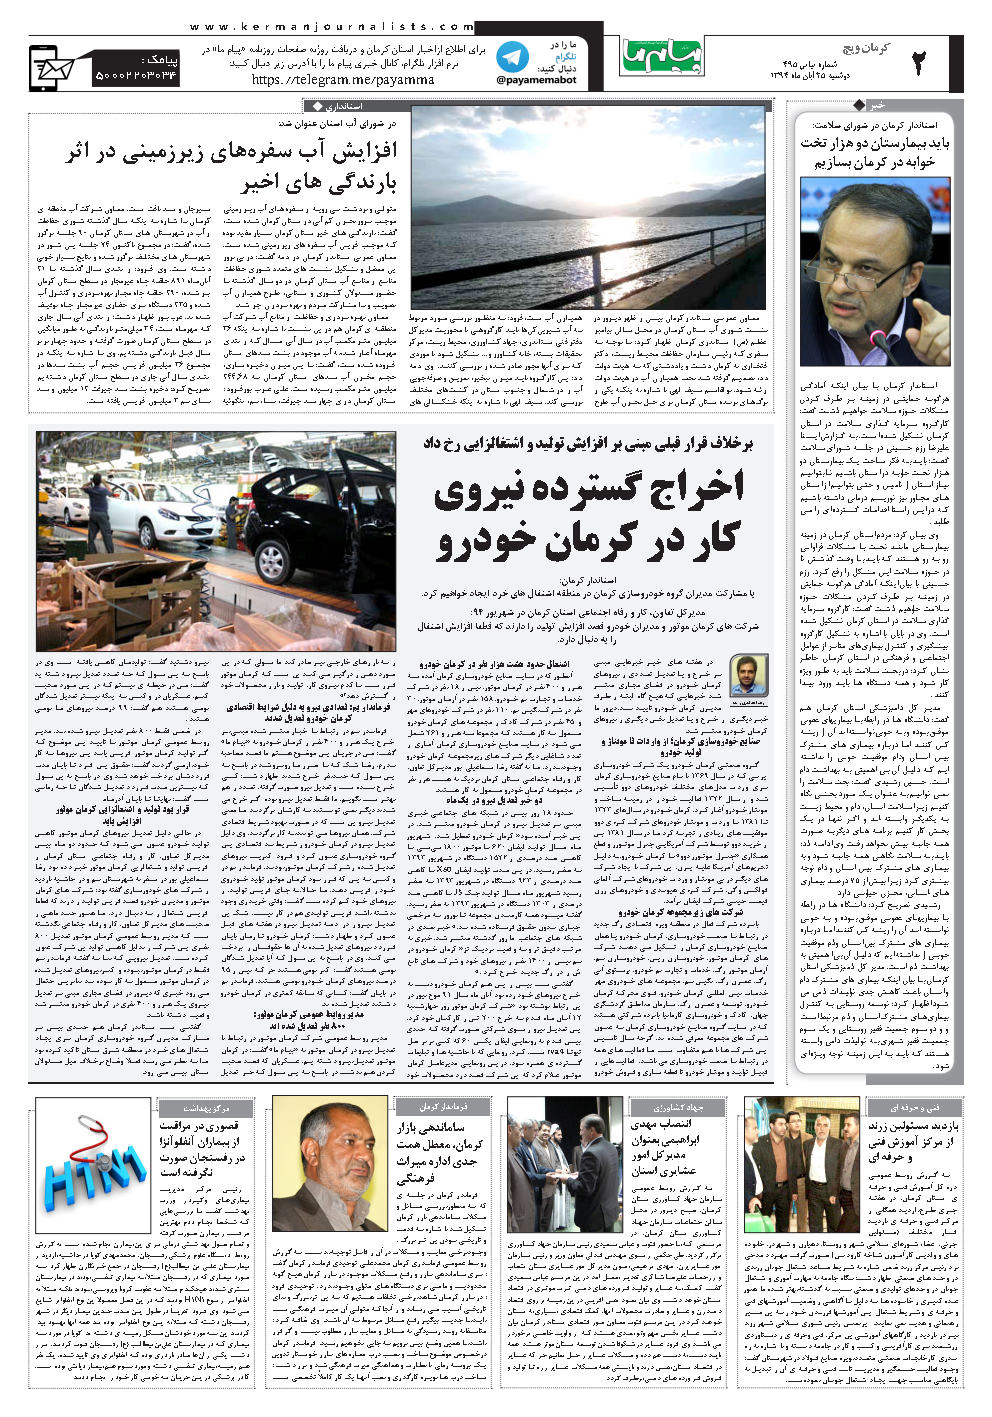 صفحه کرمان ویچ شماره شماره 495 روزنامه پیام ما